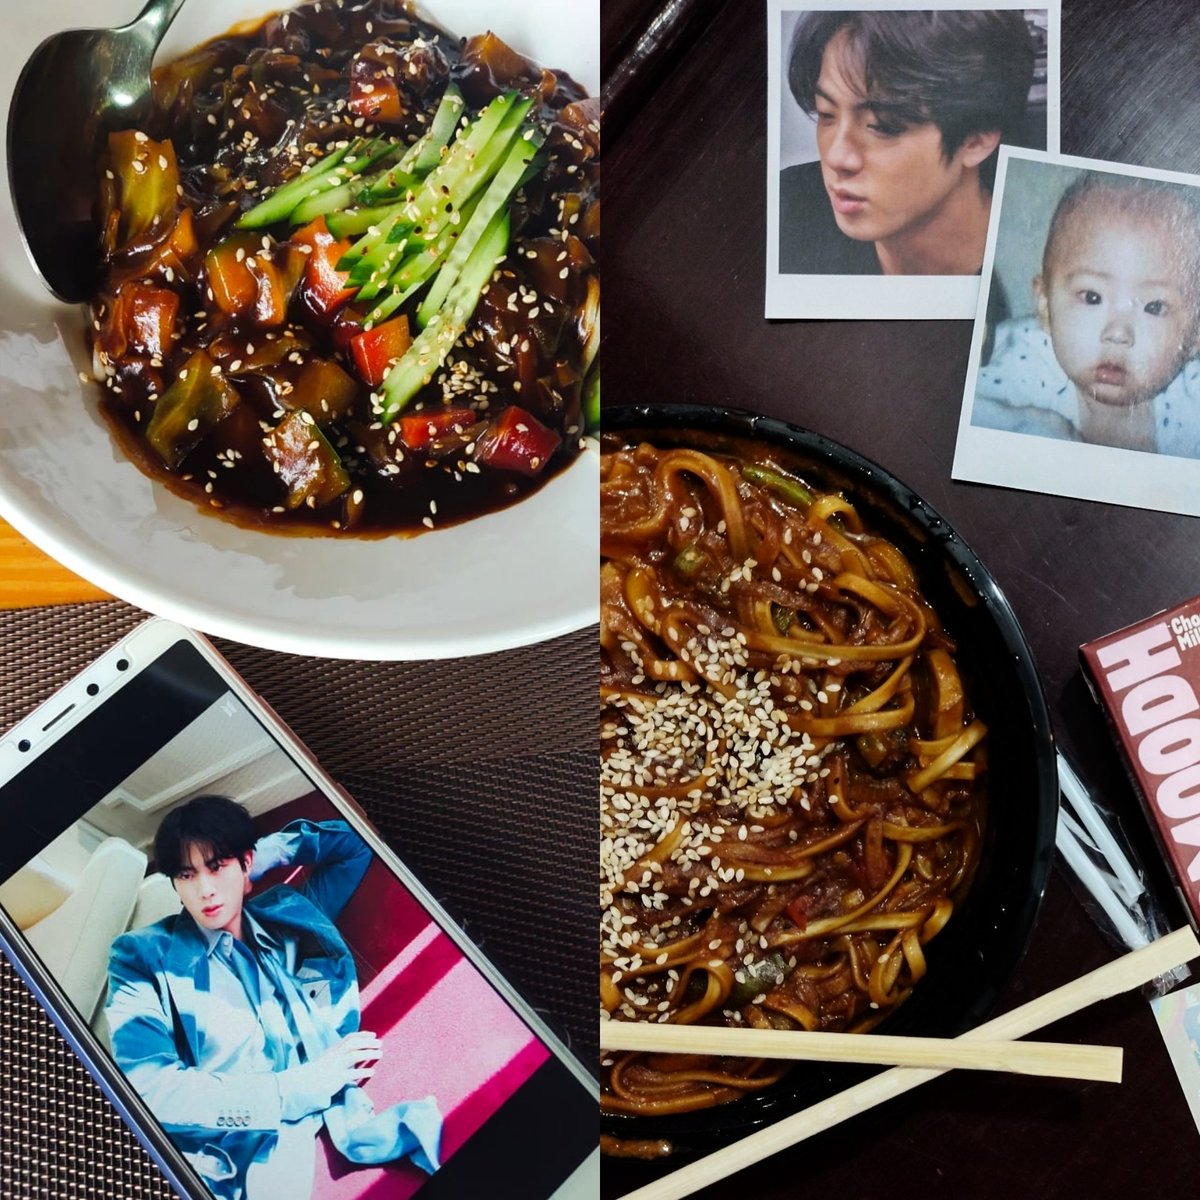 Tried new Korean food on Jinnie's b'day 💜🍜 @urooj08_twt @BTS_twt

#HappyJinDay #HappyBirthdayJin 🐹 
#GreatestEpiphanyJin
#PreciousFlowerJin
#OurUniverseJin
#WorldwideSingerJin
#TheBestGiftJin
#OurDecemberAngel
#1204WinterPrince
#SeokjinnieDayIsHere
#HappinessFairyJin